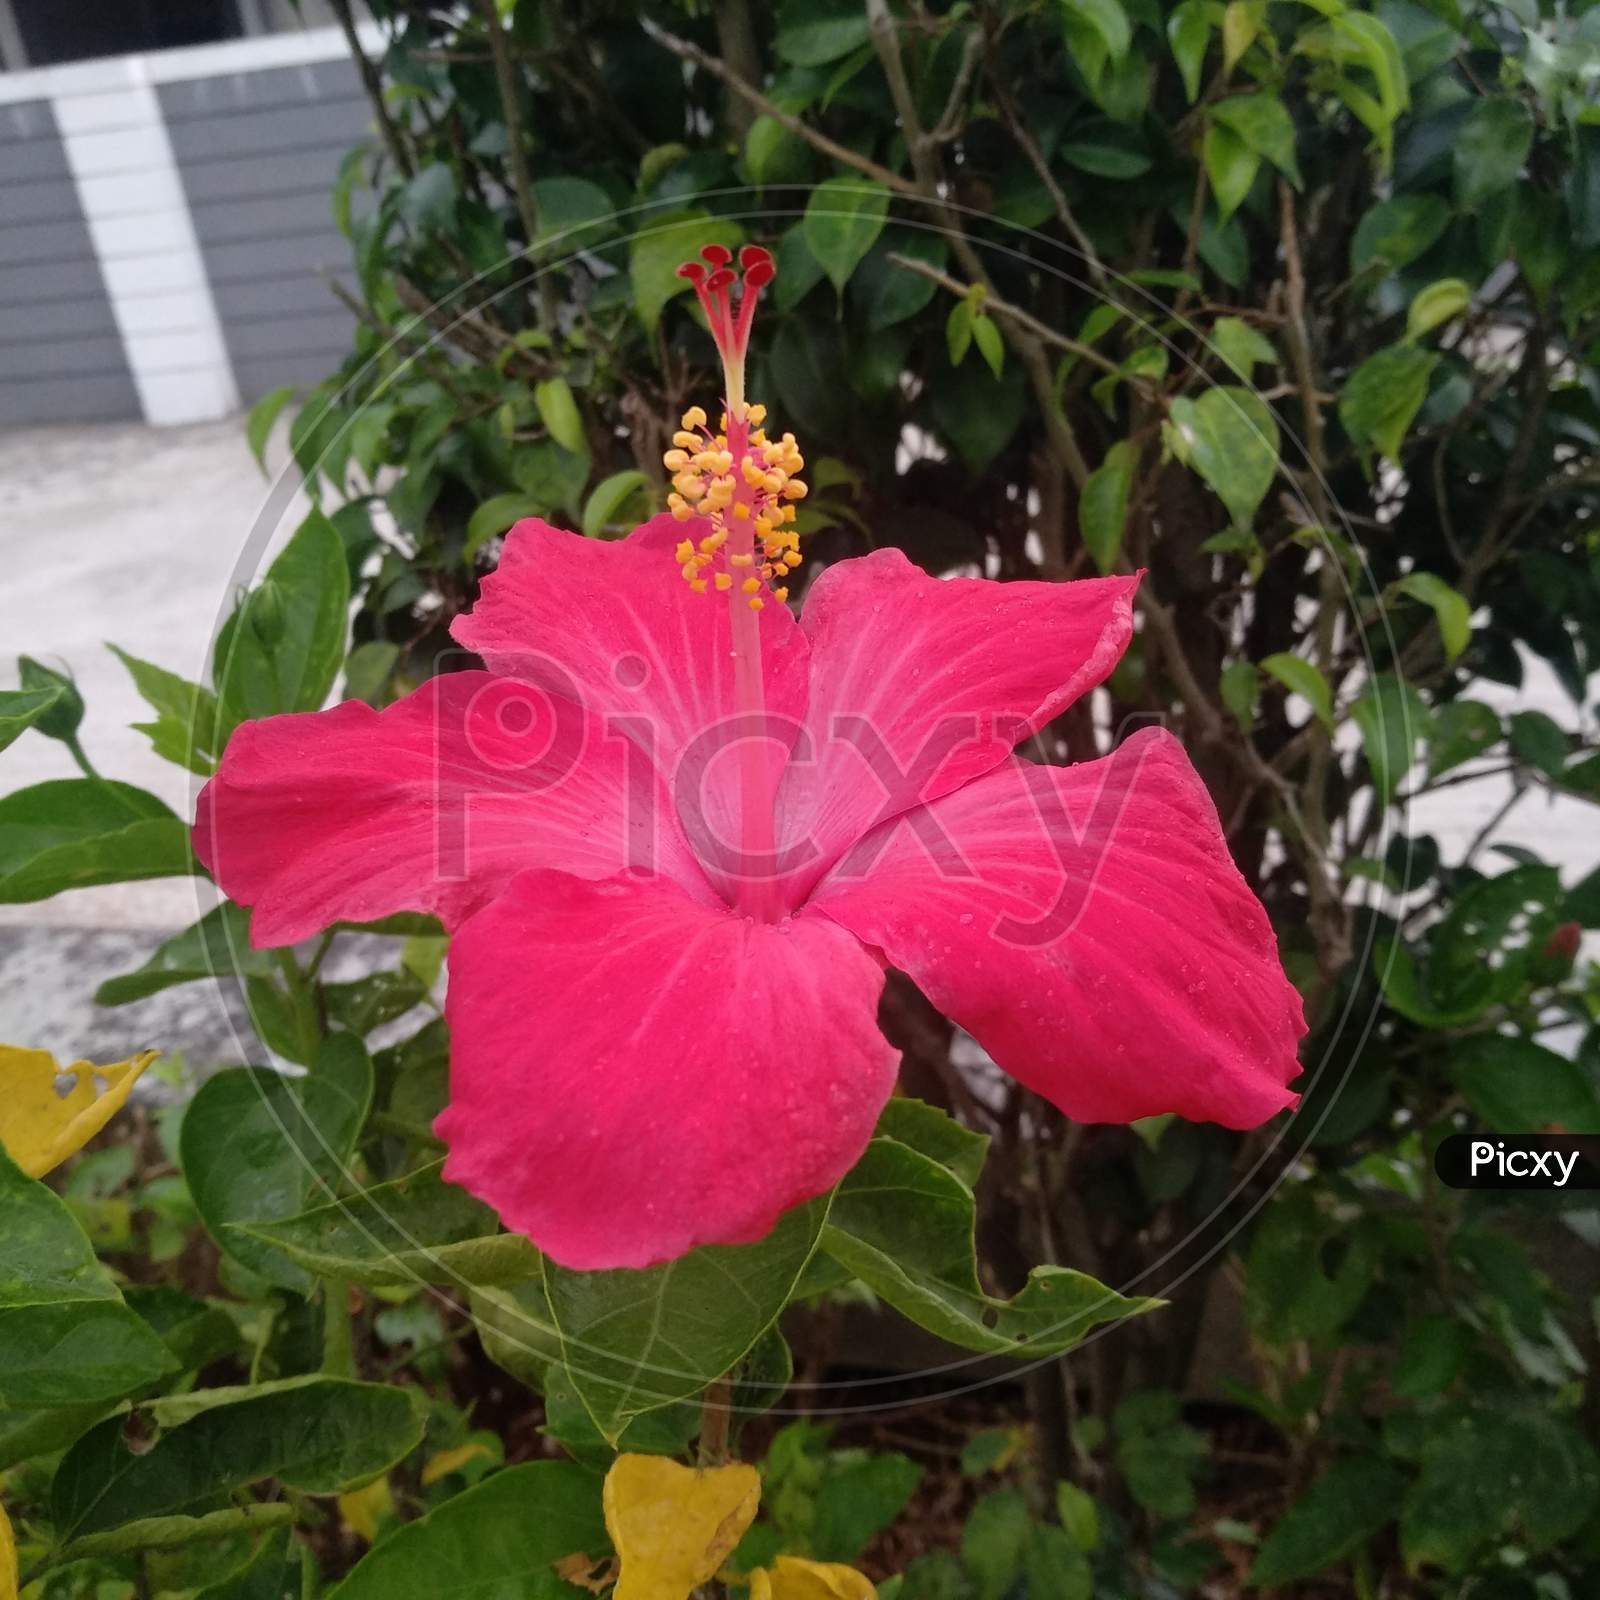 Red Hibiscus flower in garden